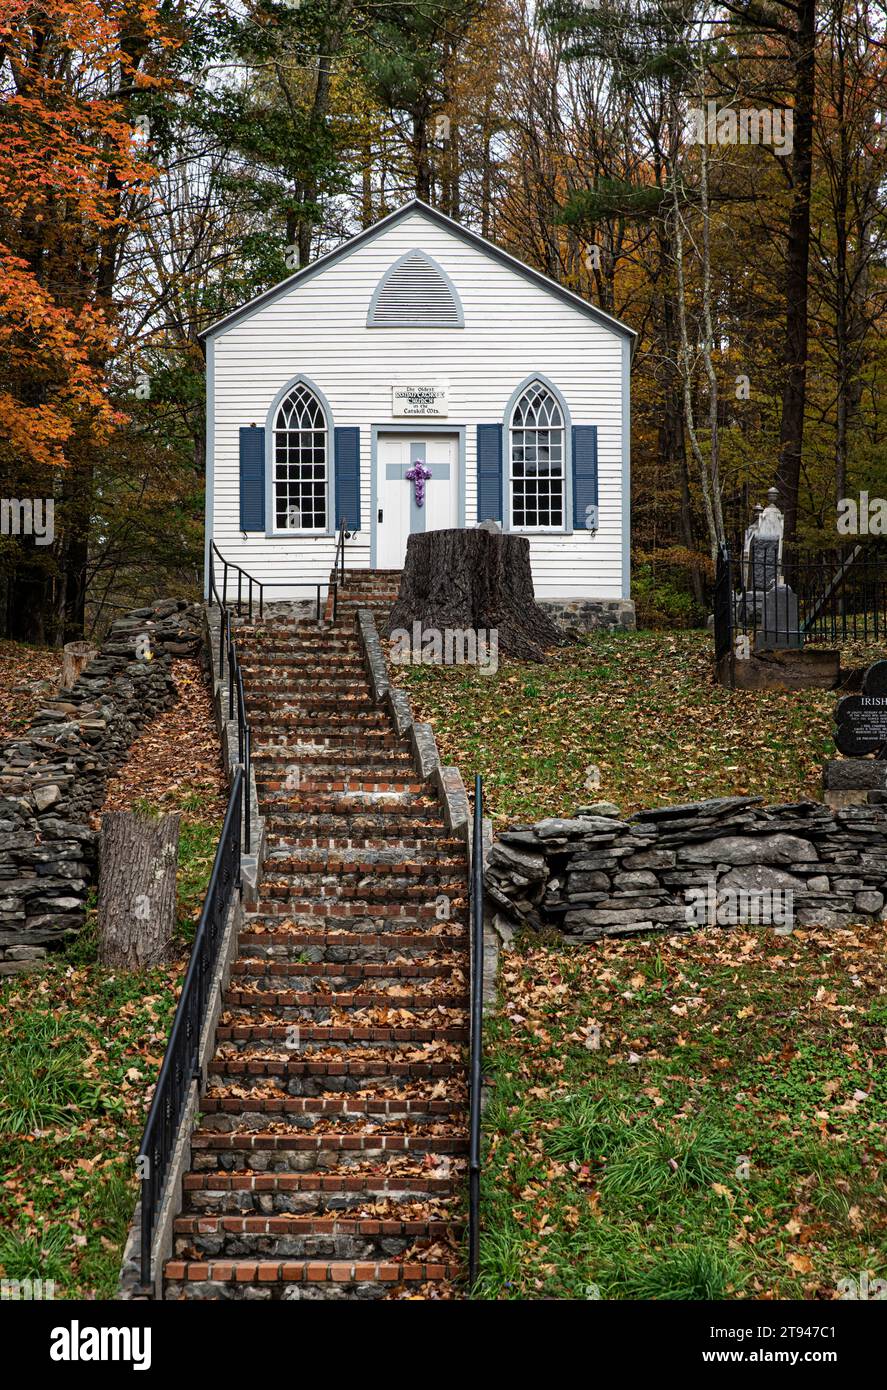 St Joseph's Chapel, circa 1800. La più antica chiesa cattolica delle Catskill Mountains. Foto Stock